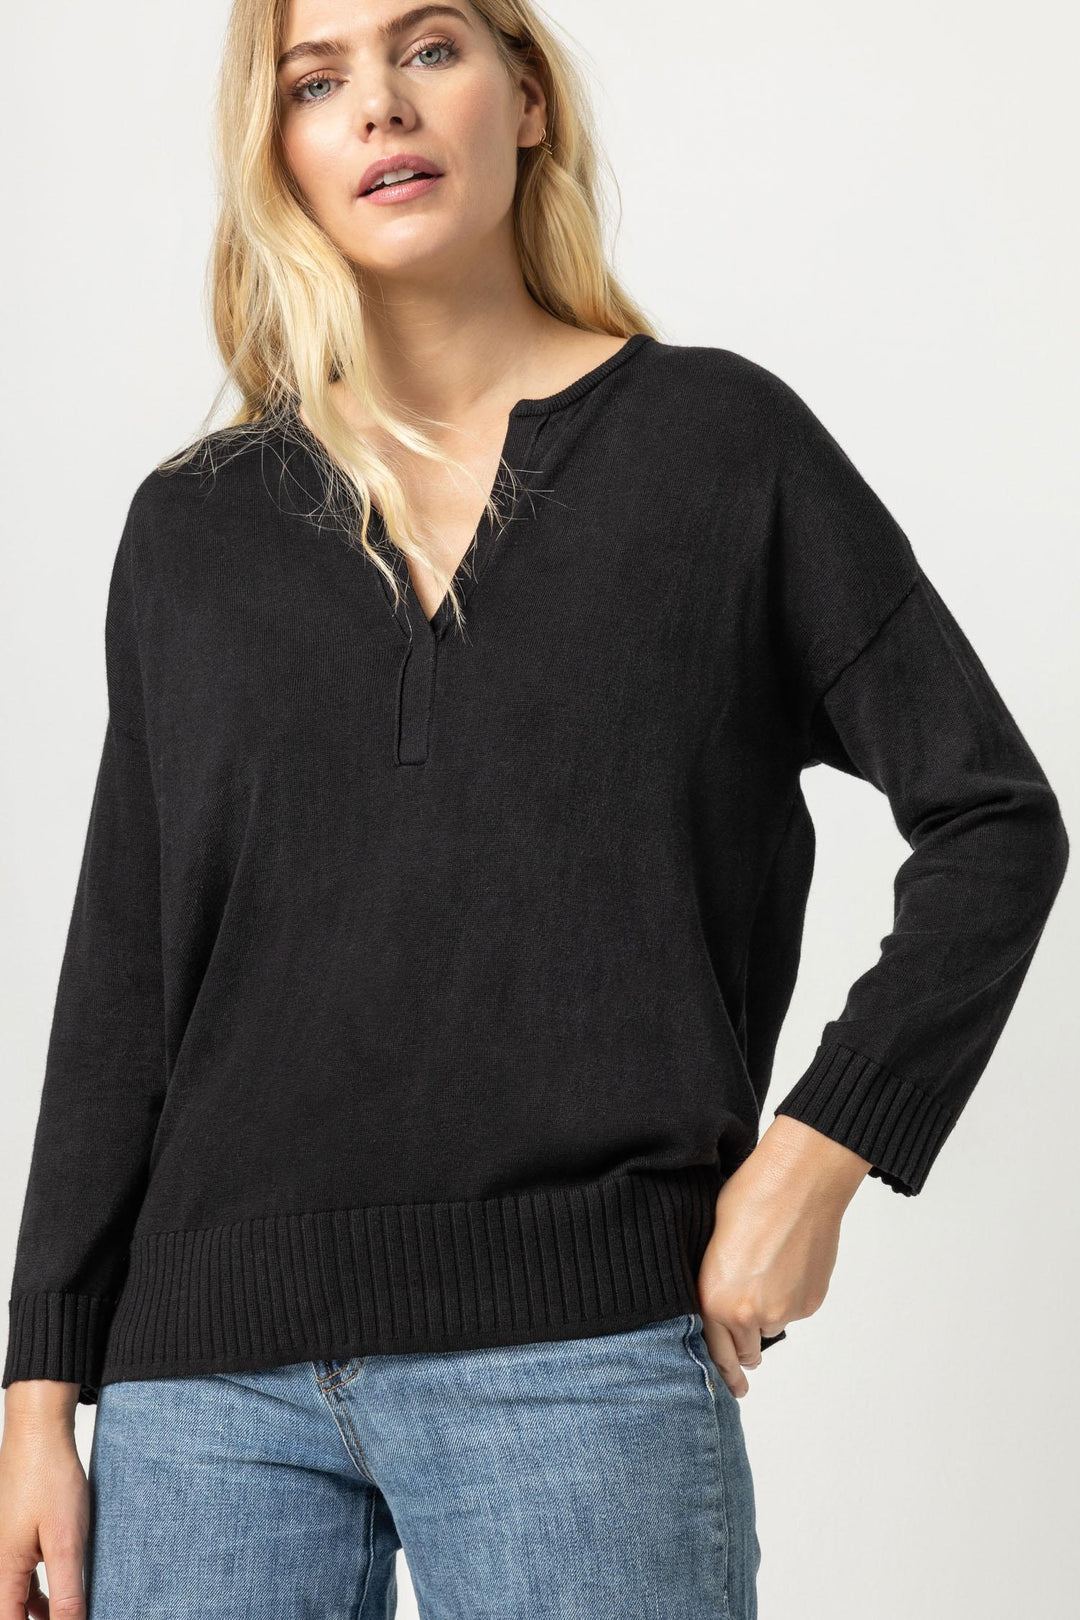 LILLA P. Split Neck Pullover Sweater - Black